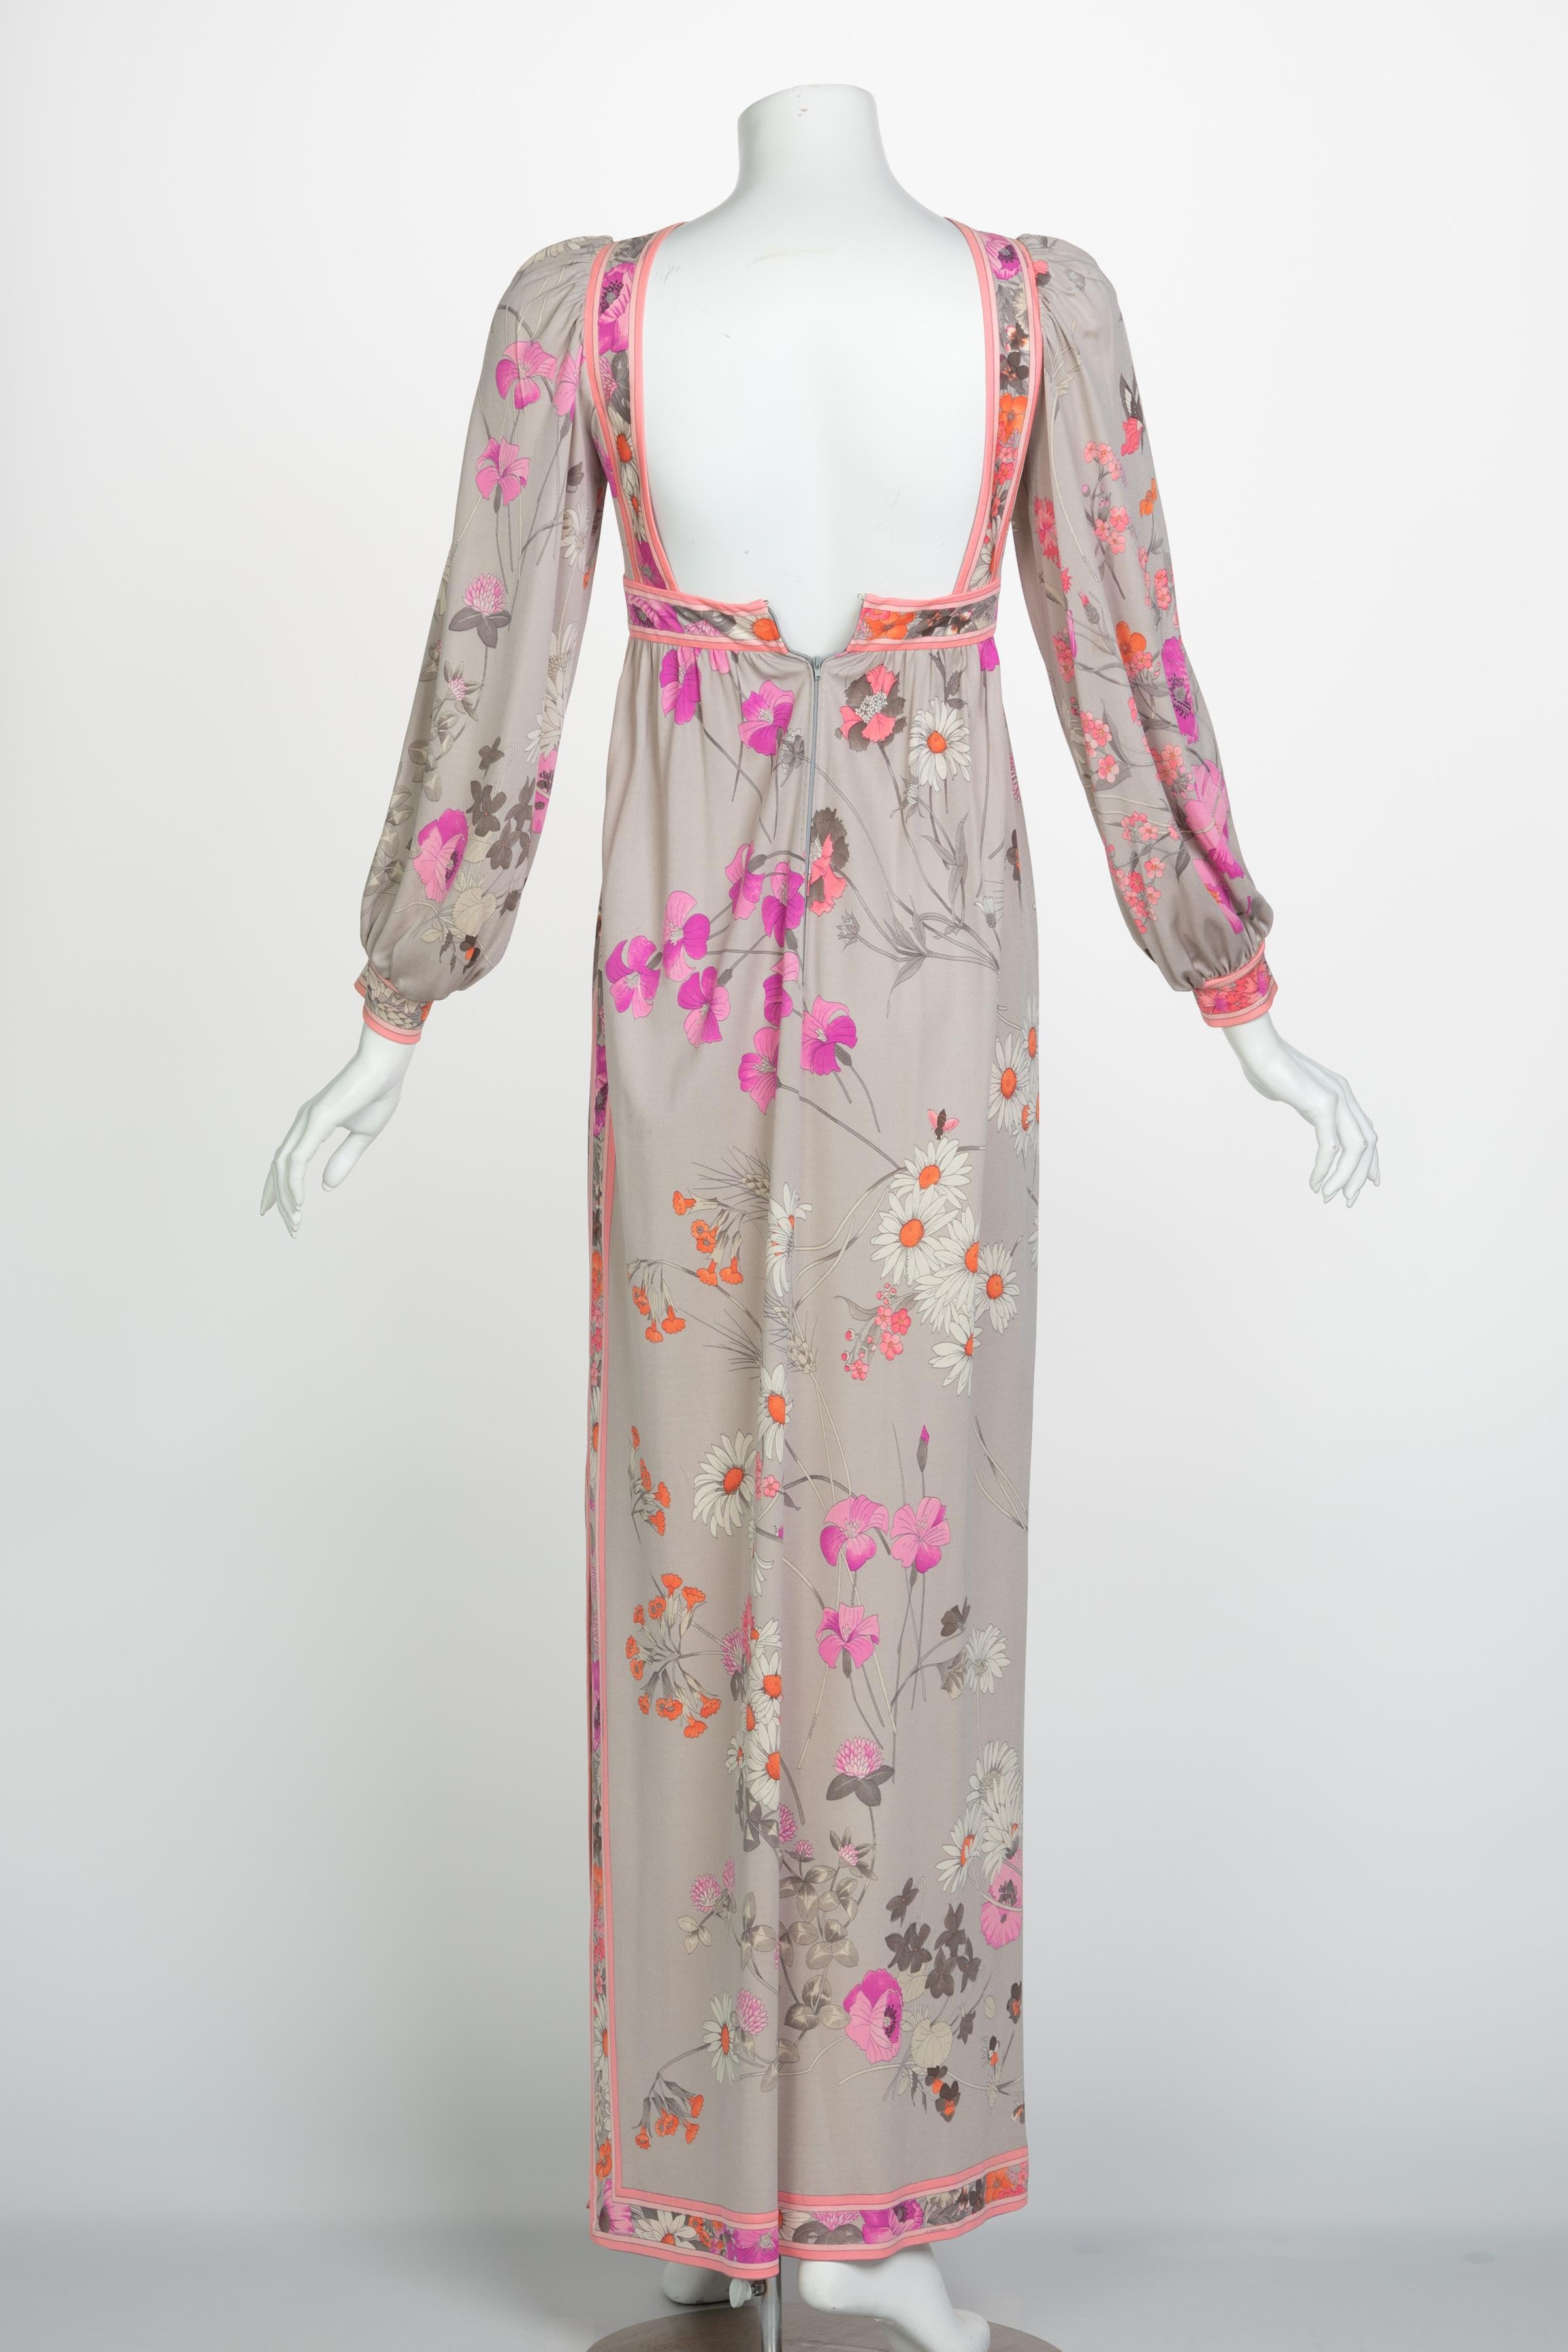 Women's Leonard Paris Silk Floral Floral Print Open Square-Back Maxi Dress, 1970s